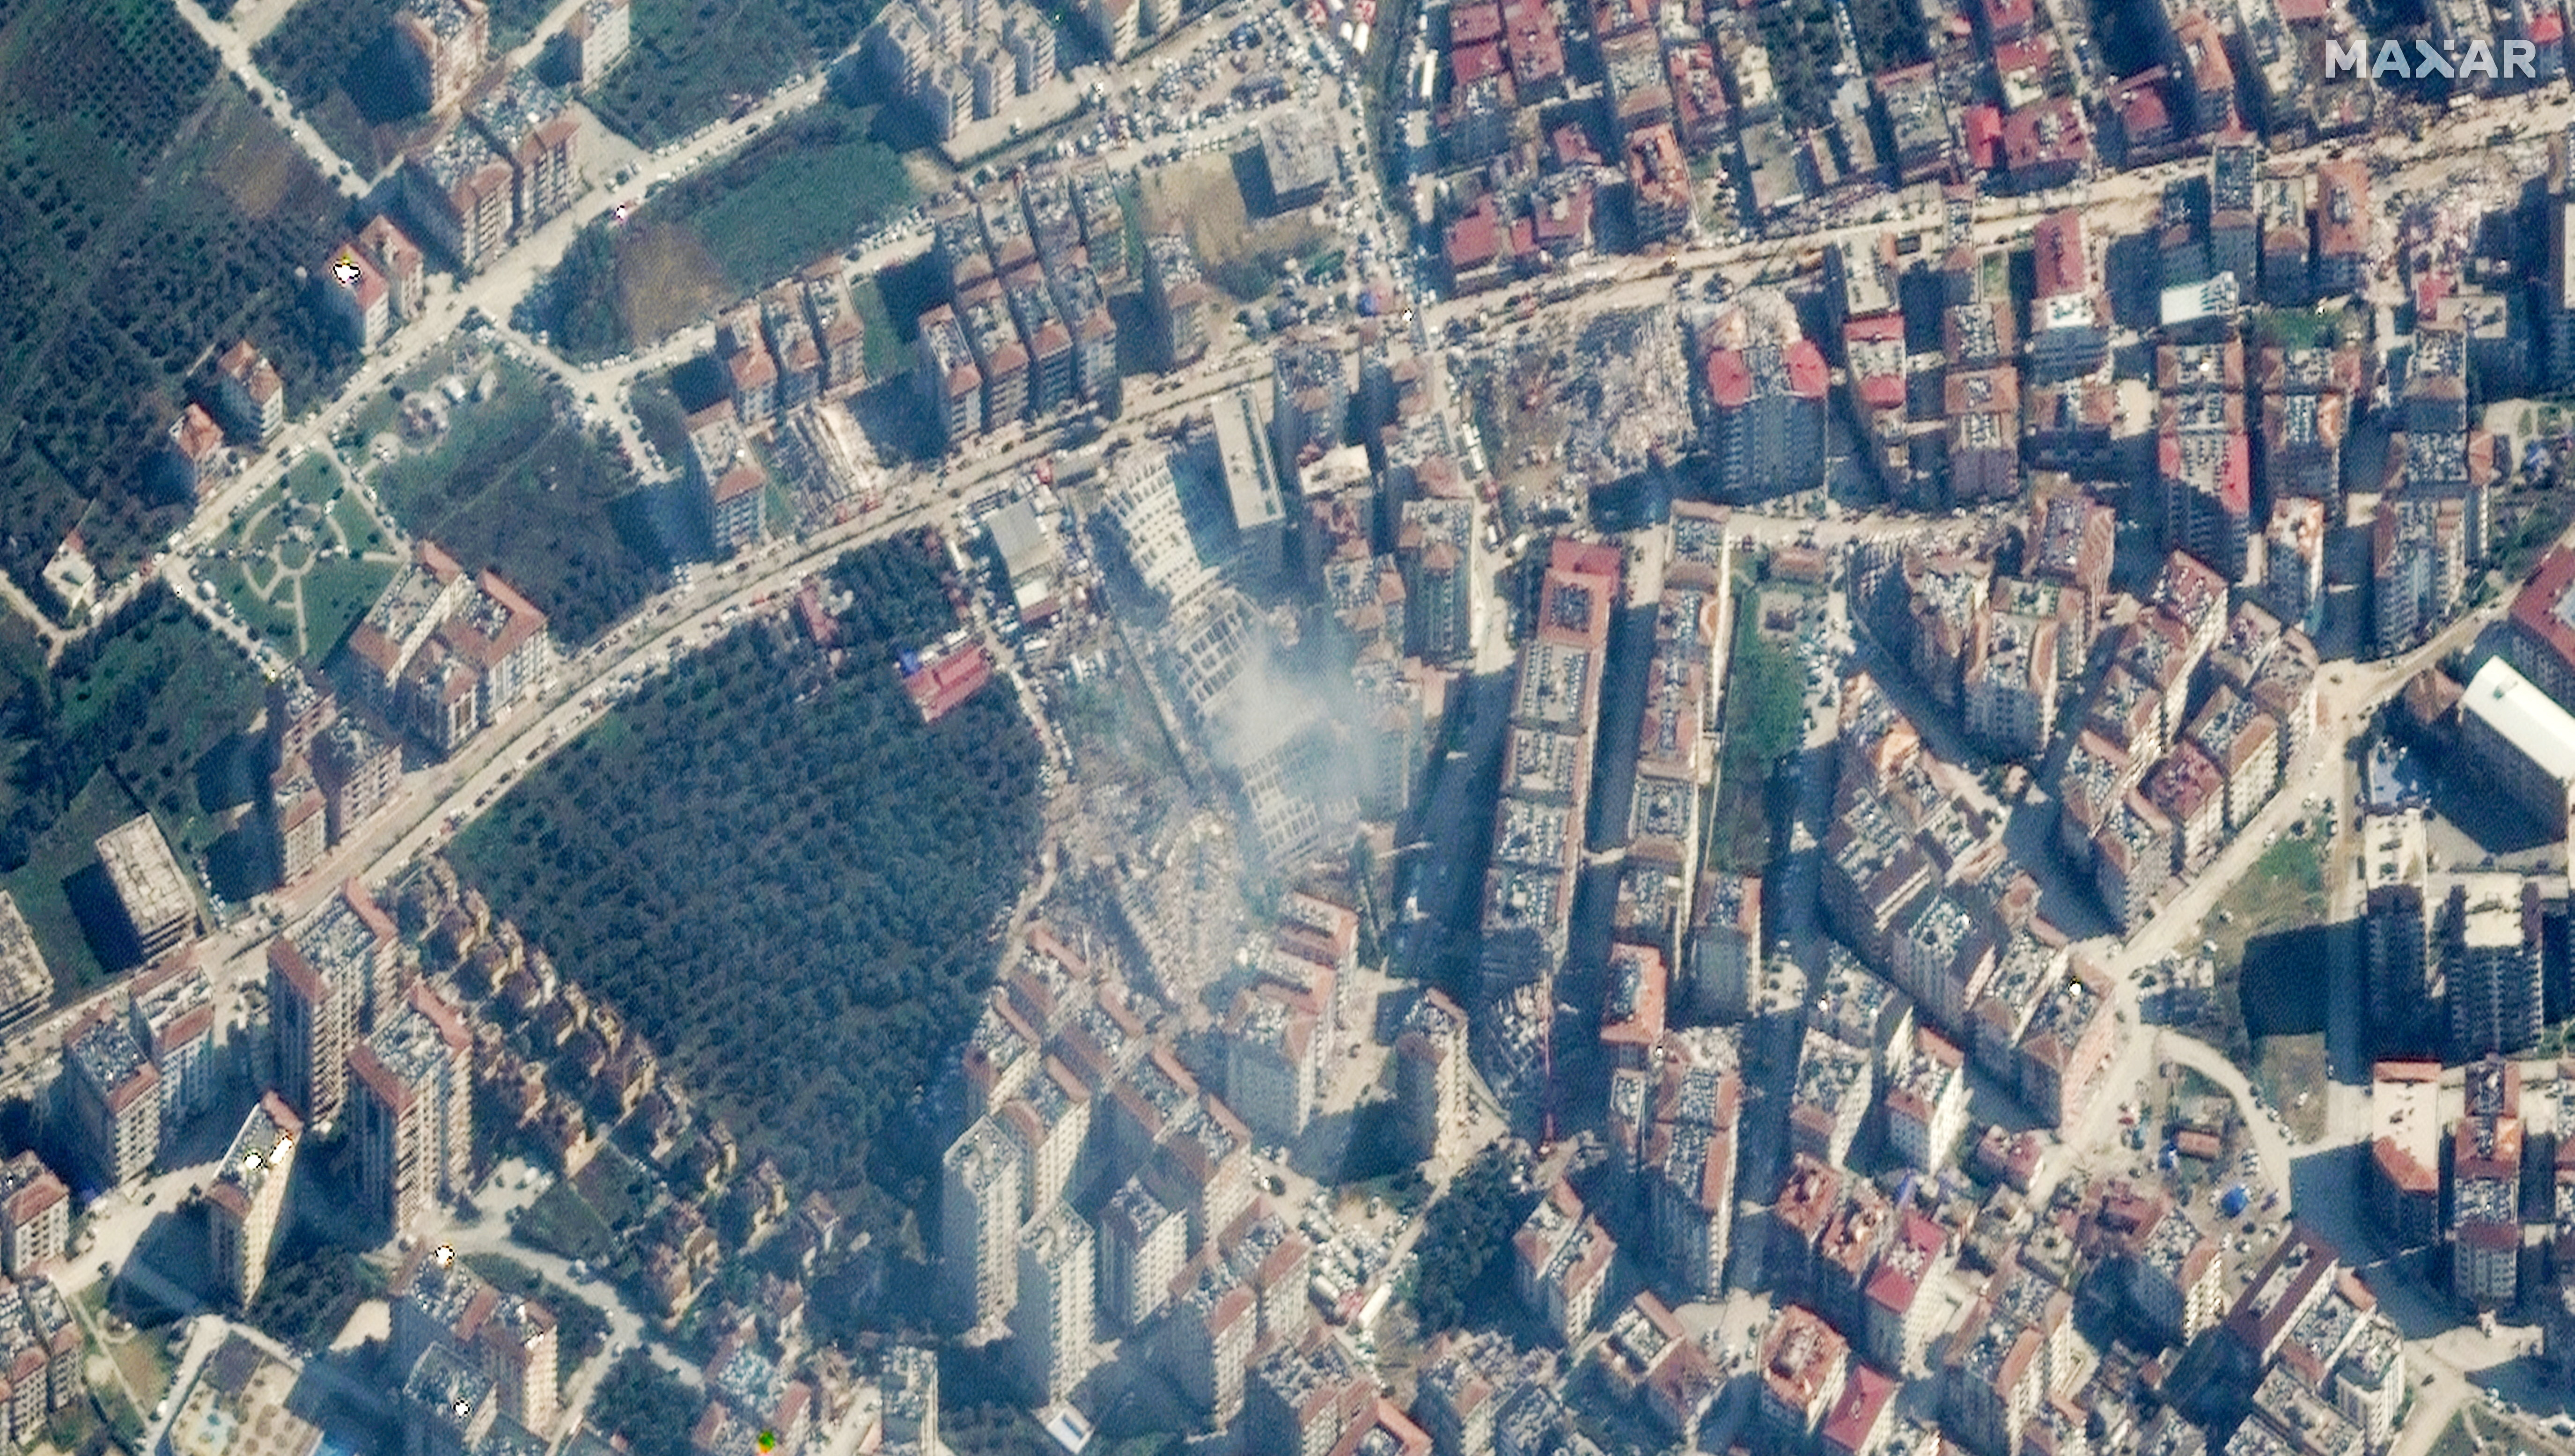 Varios edificios derrumbados después del terremoto en Antakya, Turquía, el 8 de febrero de 2023. Imagen satelital ©2023 Maxar Technologies/Handout via REUTERS 